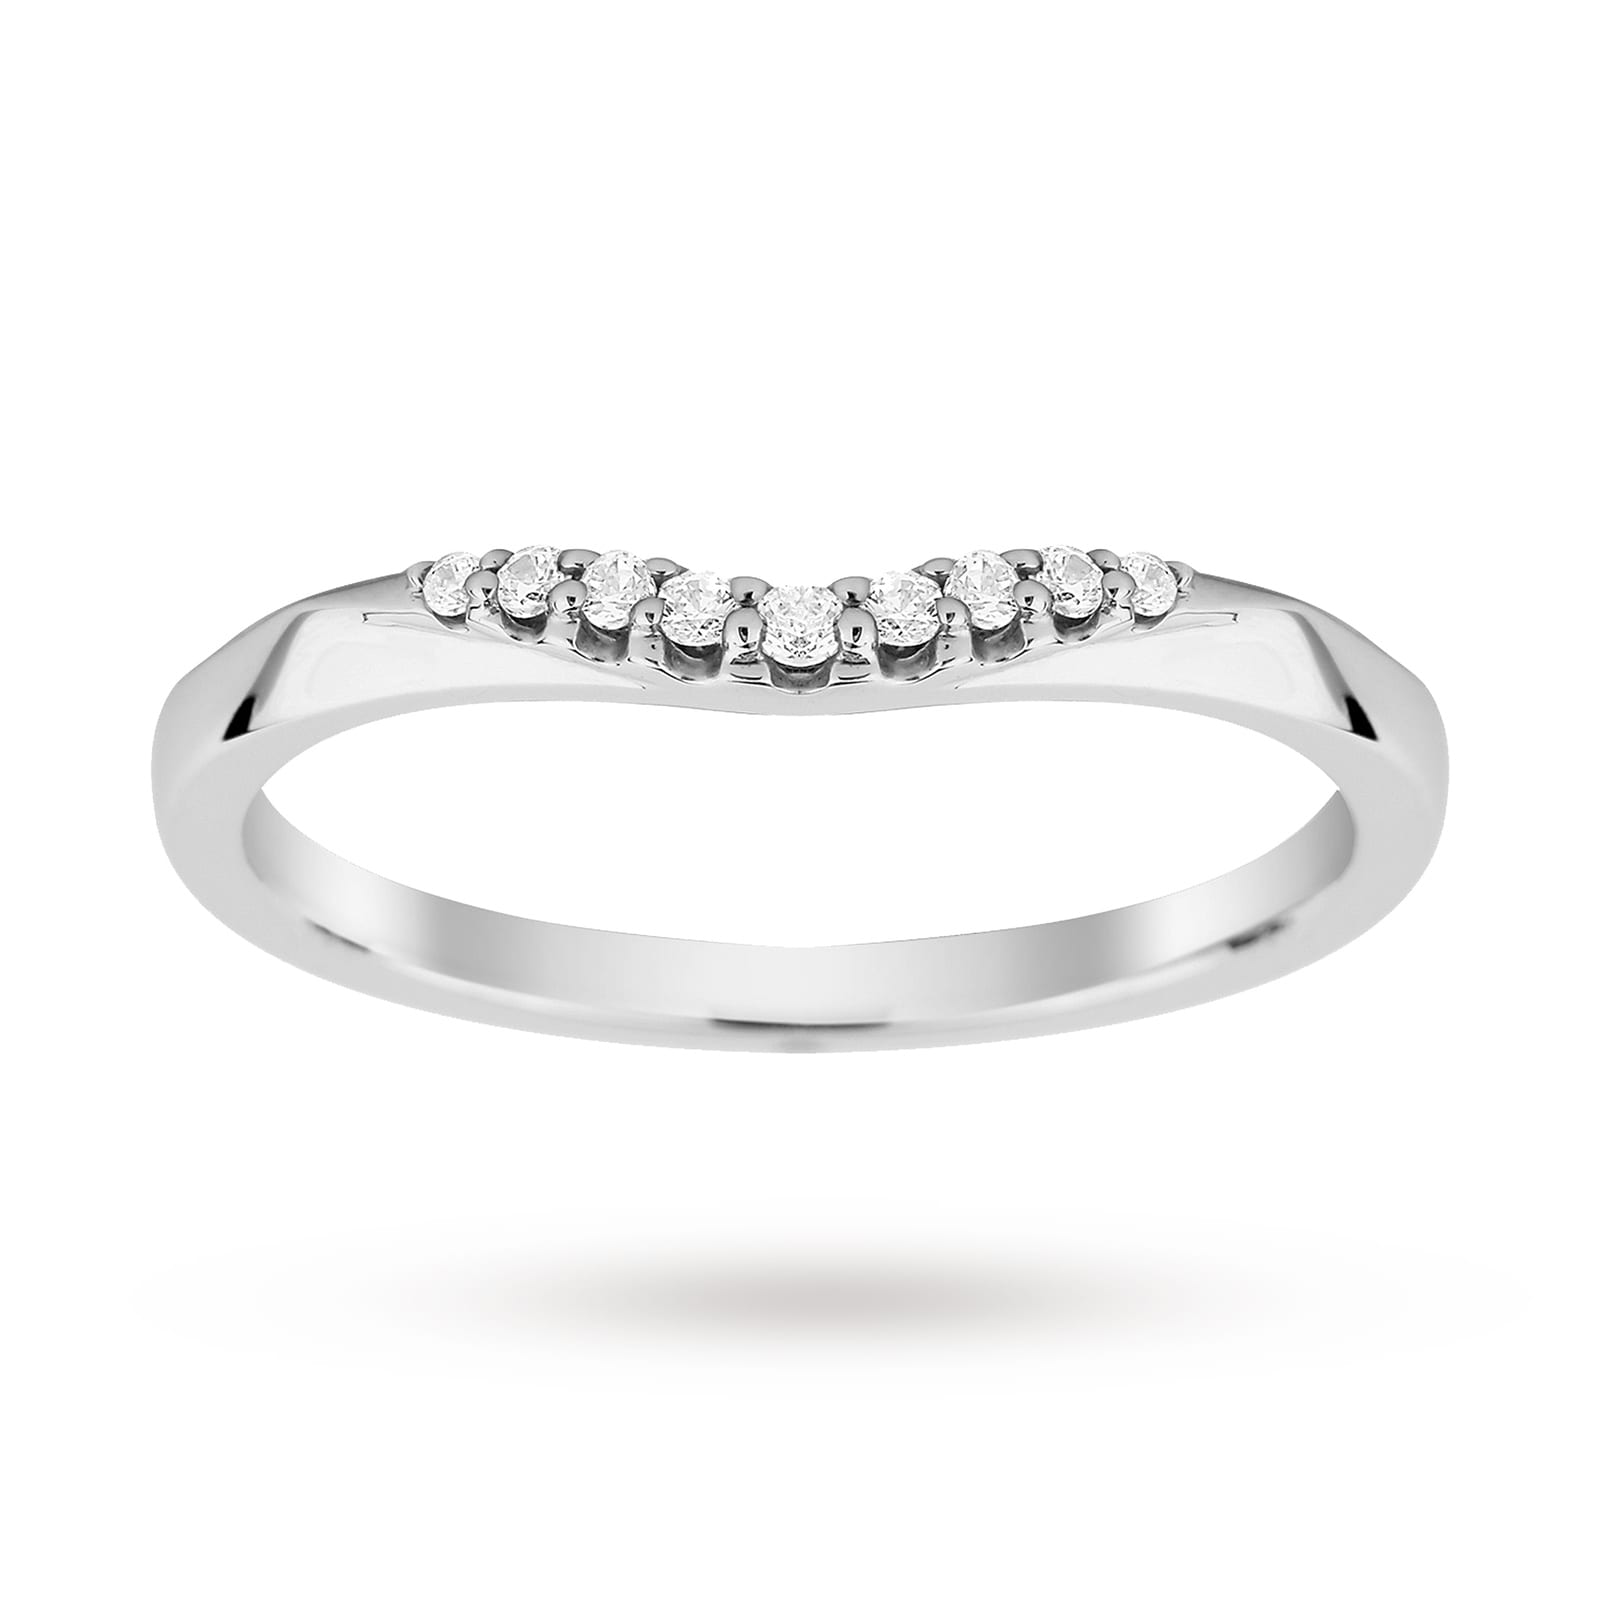 Platinum 0.10 Total Carat Weight Diamond Wedding Band - Ring Size J